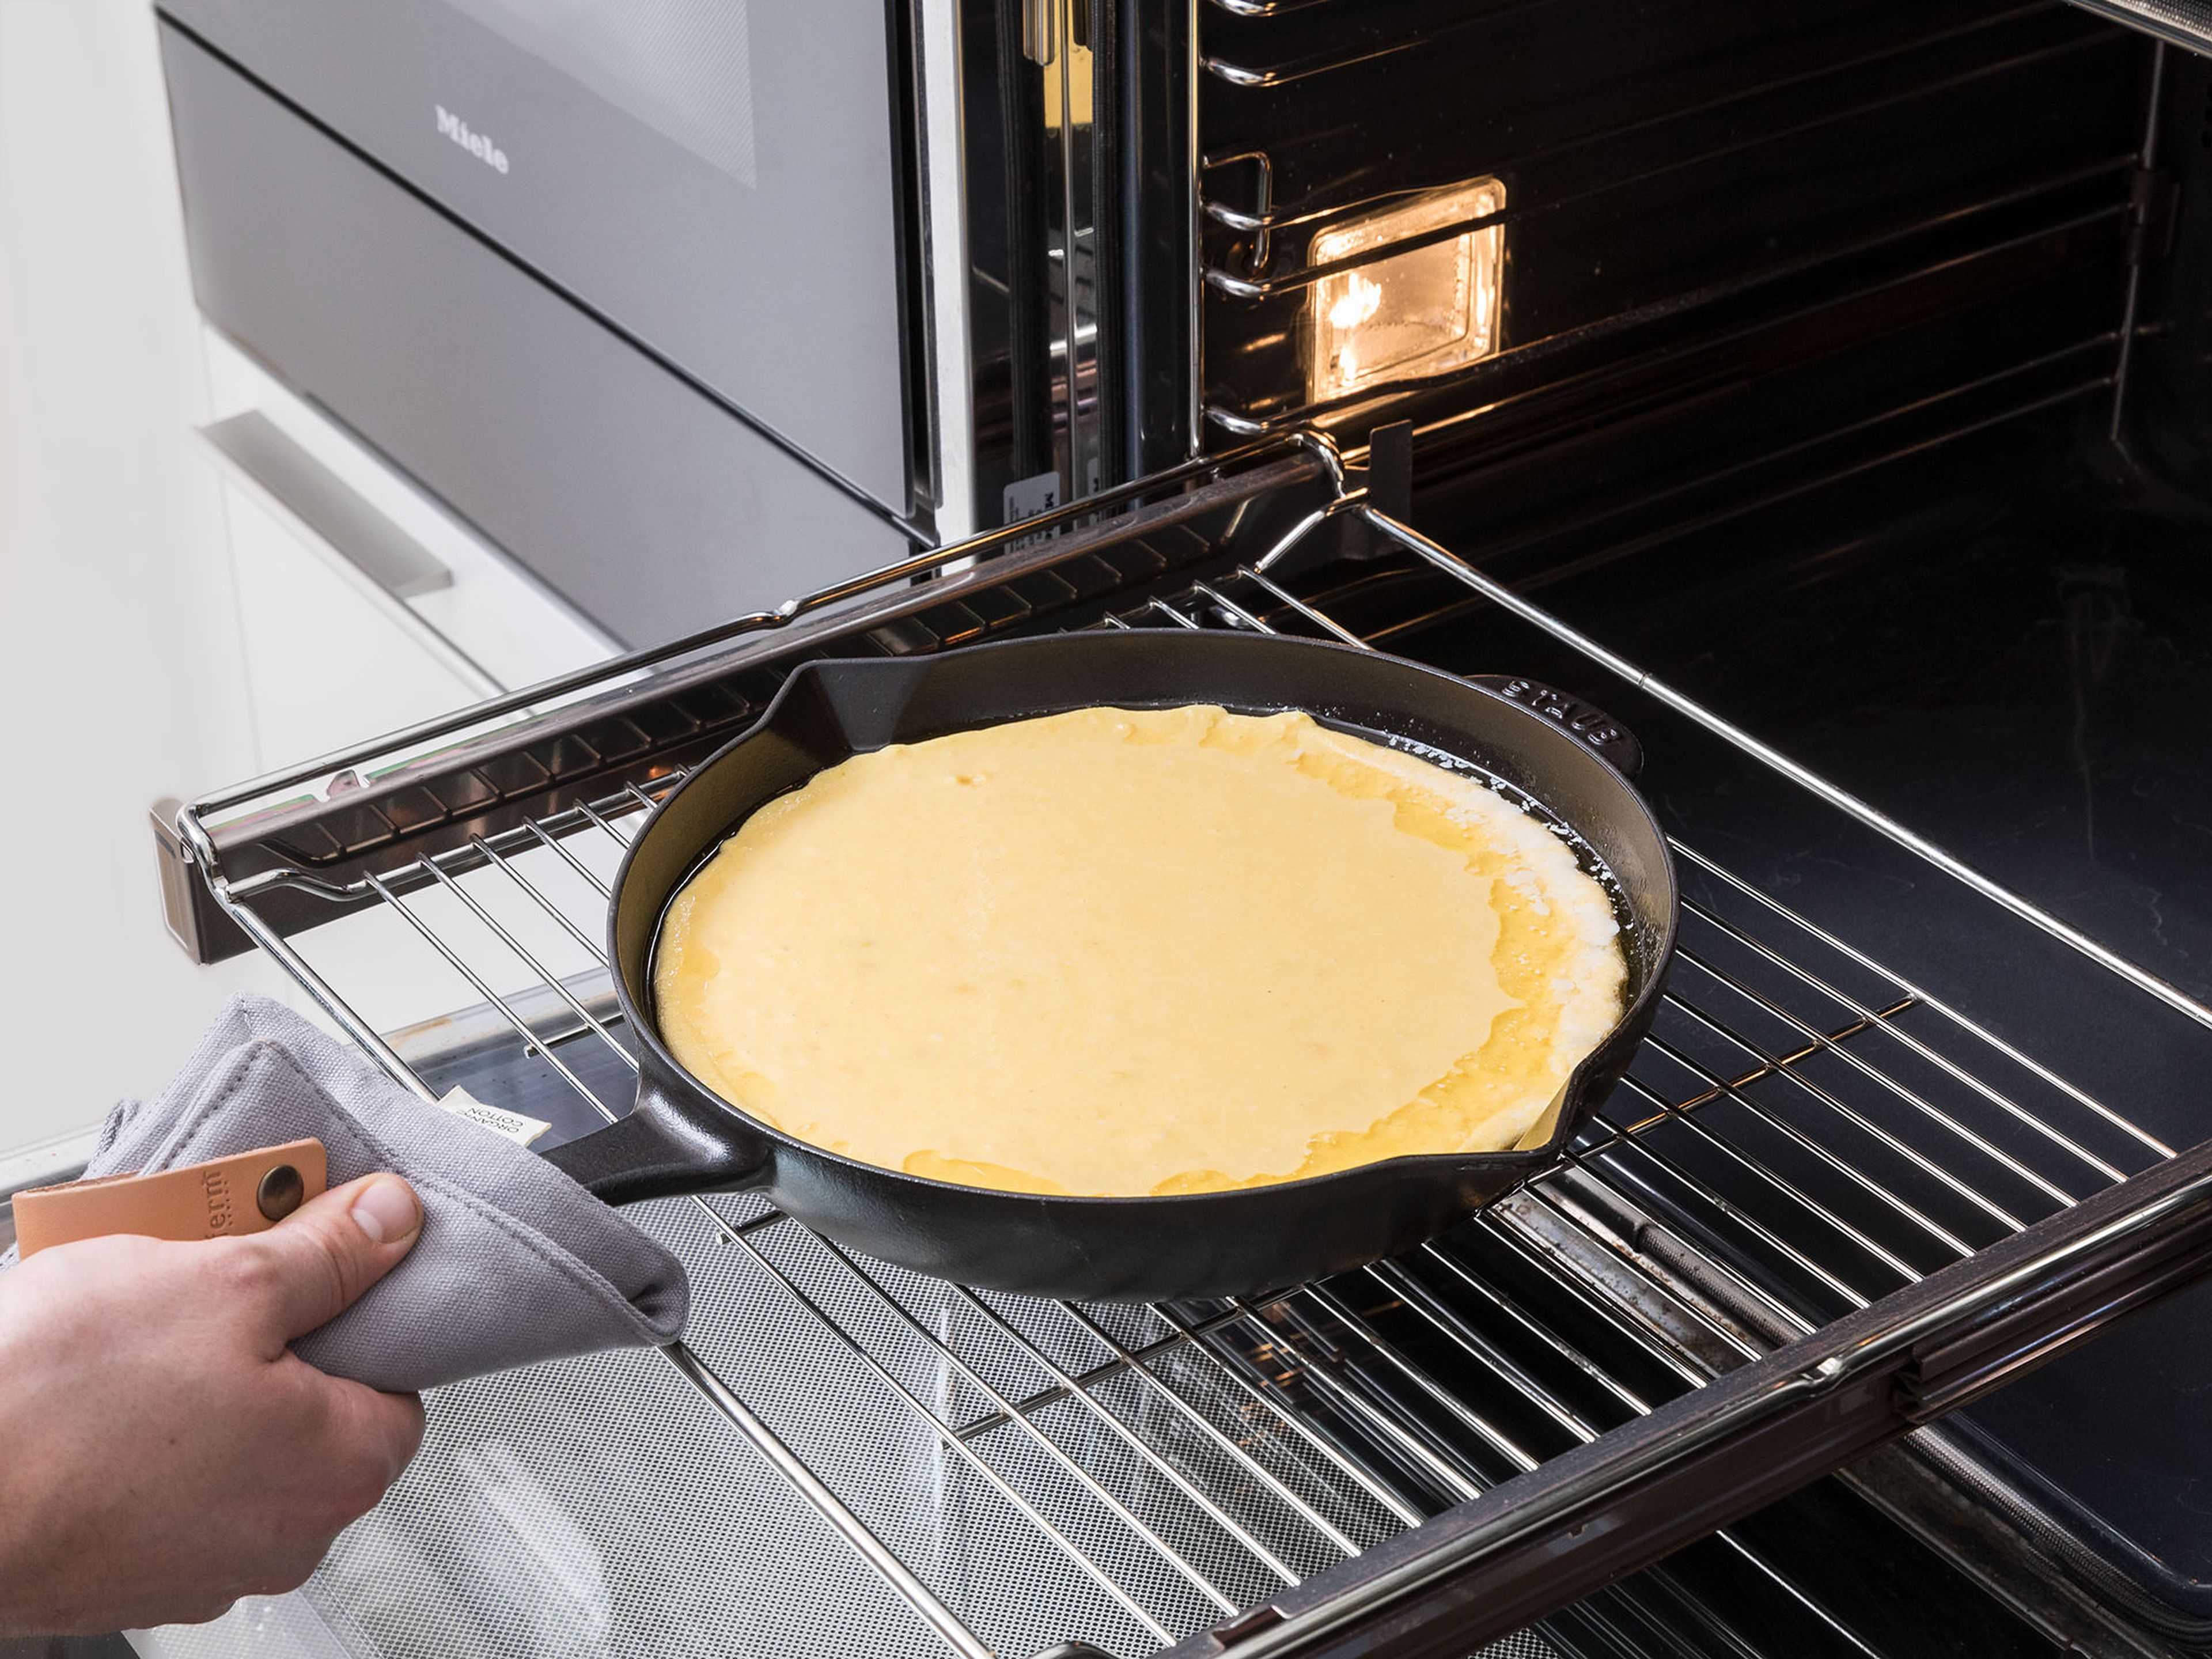 Zwei Drittel der Öl-Butter-Mischung aus der gusseisernen Pfanne in die Maisgrieß-Buttermilch-Mischung geben, den Rest in der Pfanne lassen. Pürierten Mais, restliche Maiskörner, Eier, Backpulver, Backnatron und Salz ebenfalls in die Schüssel geben und vermengen. Den Teig in die heiße gusseiserne Pfanne geben und bei 230°C ca. 20 Min. backen, oder bis die Ränder goldbraun sind und die Oberfläche leichte Risse bekommt. Das Maisbrot aus dem Backofen nehmen und in der Pfanne abkühlen lassen.